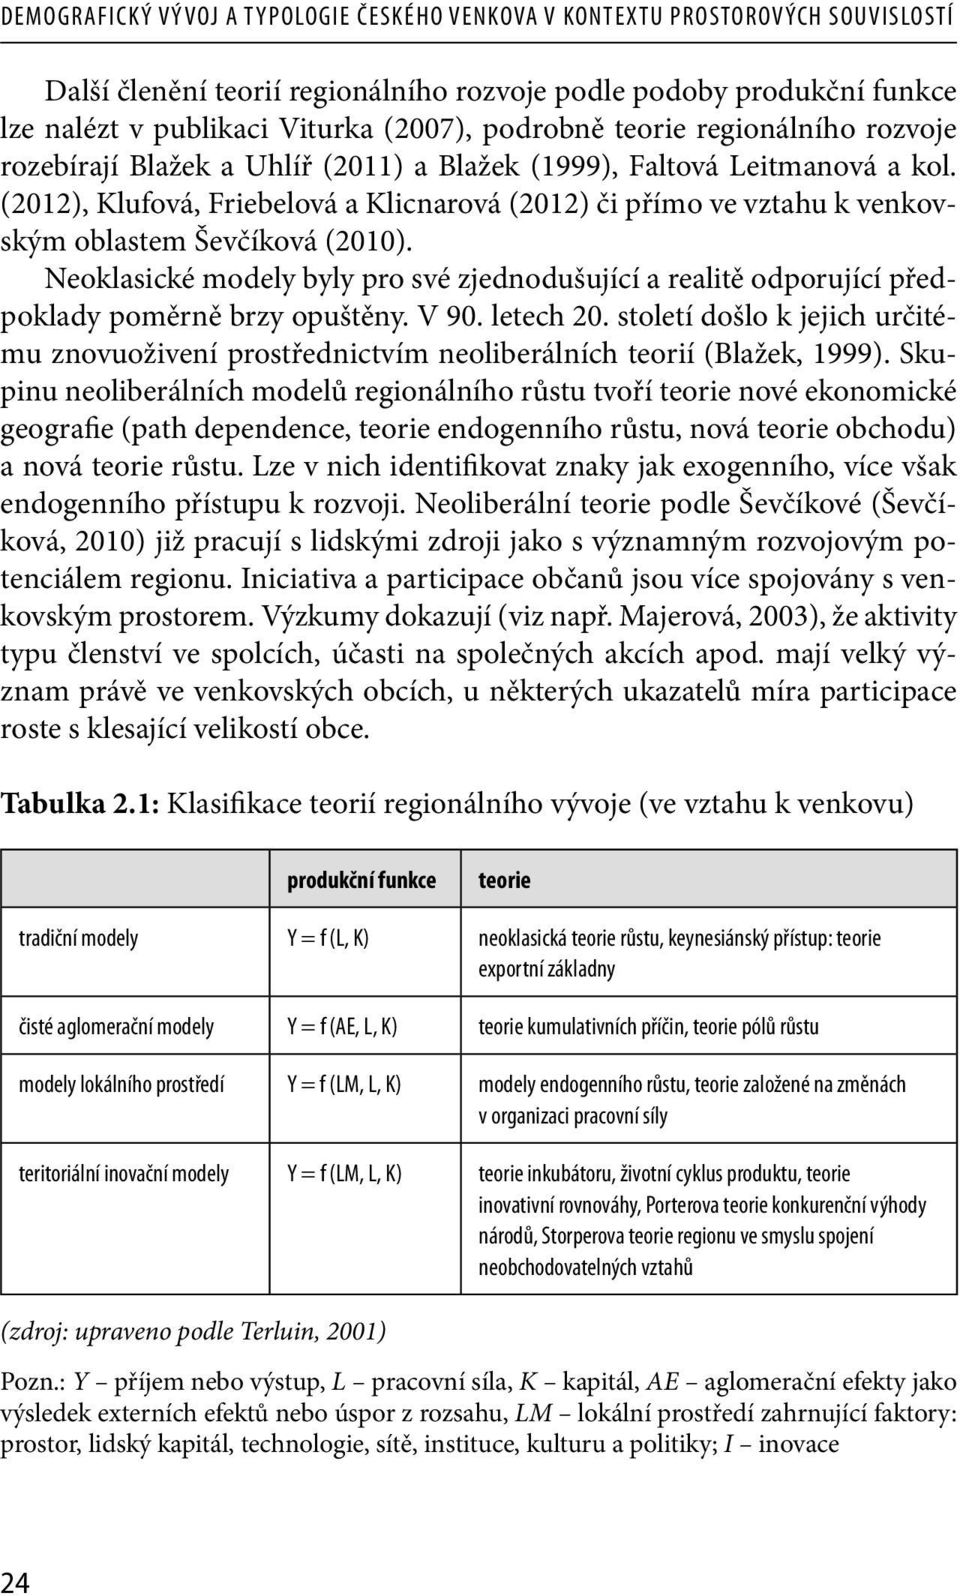 (2012), Klufová, Friebelová a Klicnarová (2012) či přímo ve vztahu k venkovským oblastem Ševčíková (2010).